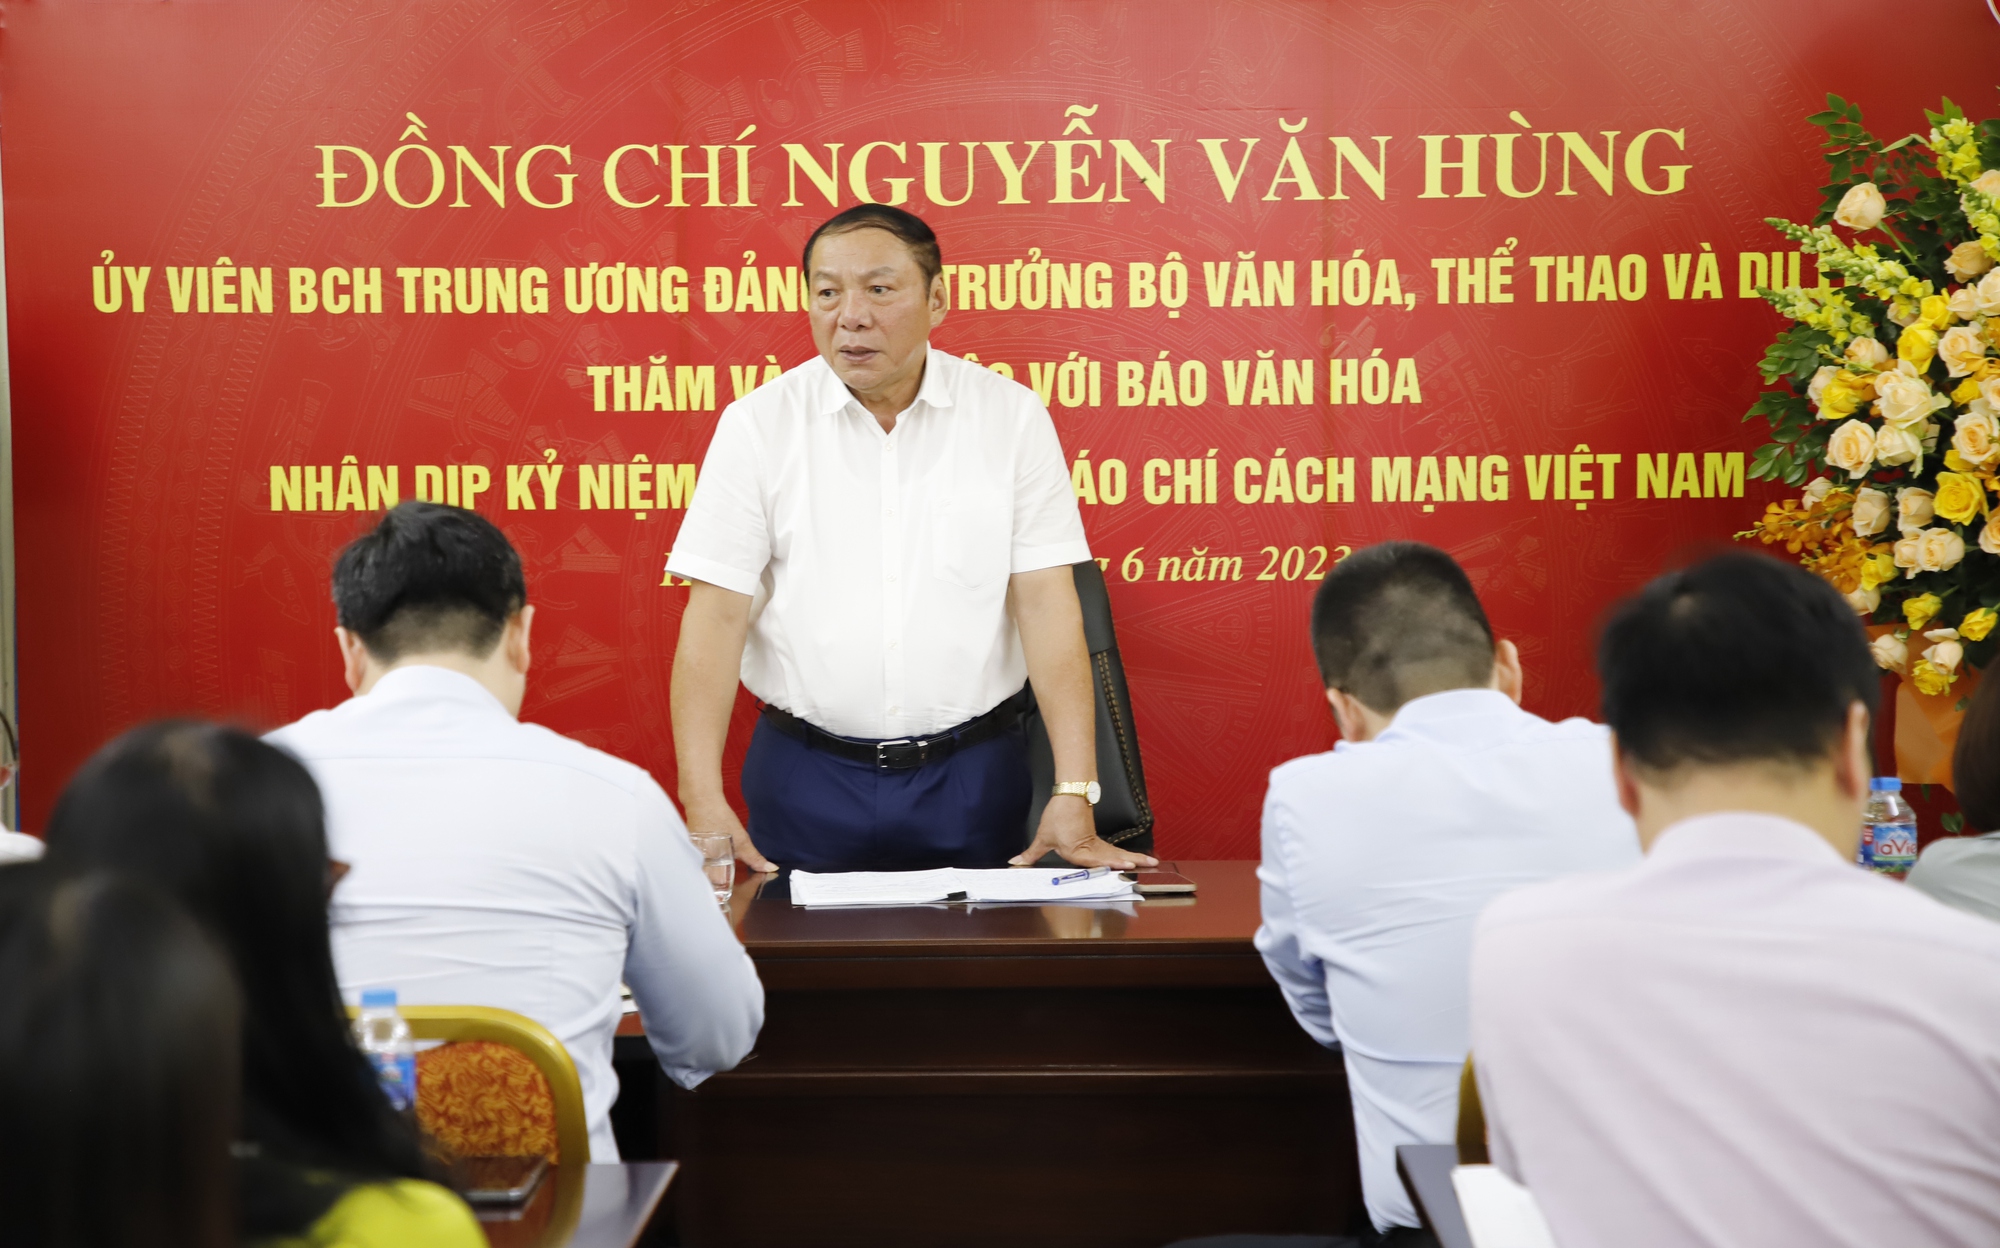 Bộ trưởng Nguyễn Văn Hùng: Báo chí phải đi trước, mở đường, tạo dư luận đồng thuận trong truyền thông chính sách - Ảnh 4.